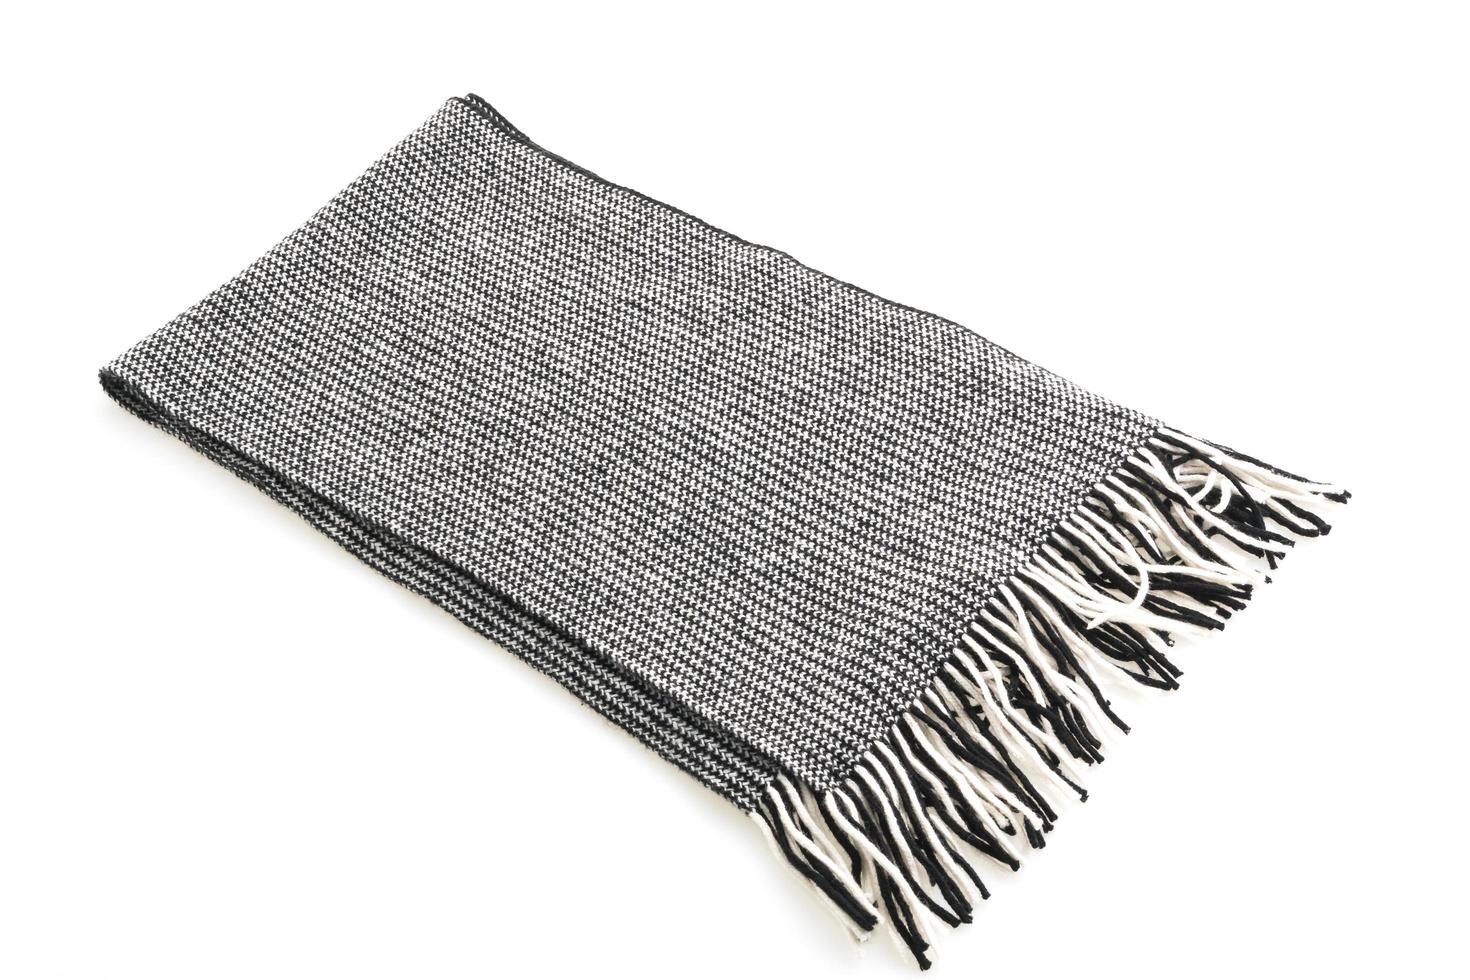 grauer Schal auf weißem Hintergrund foto